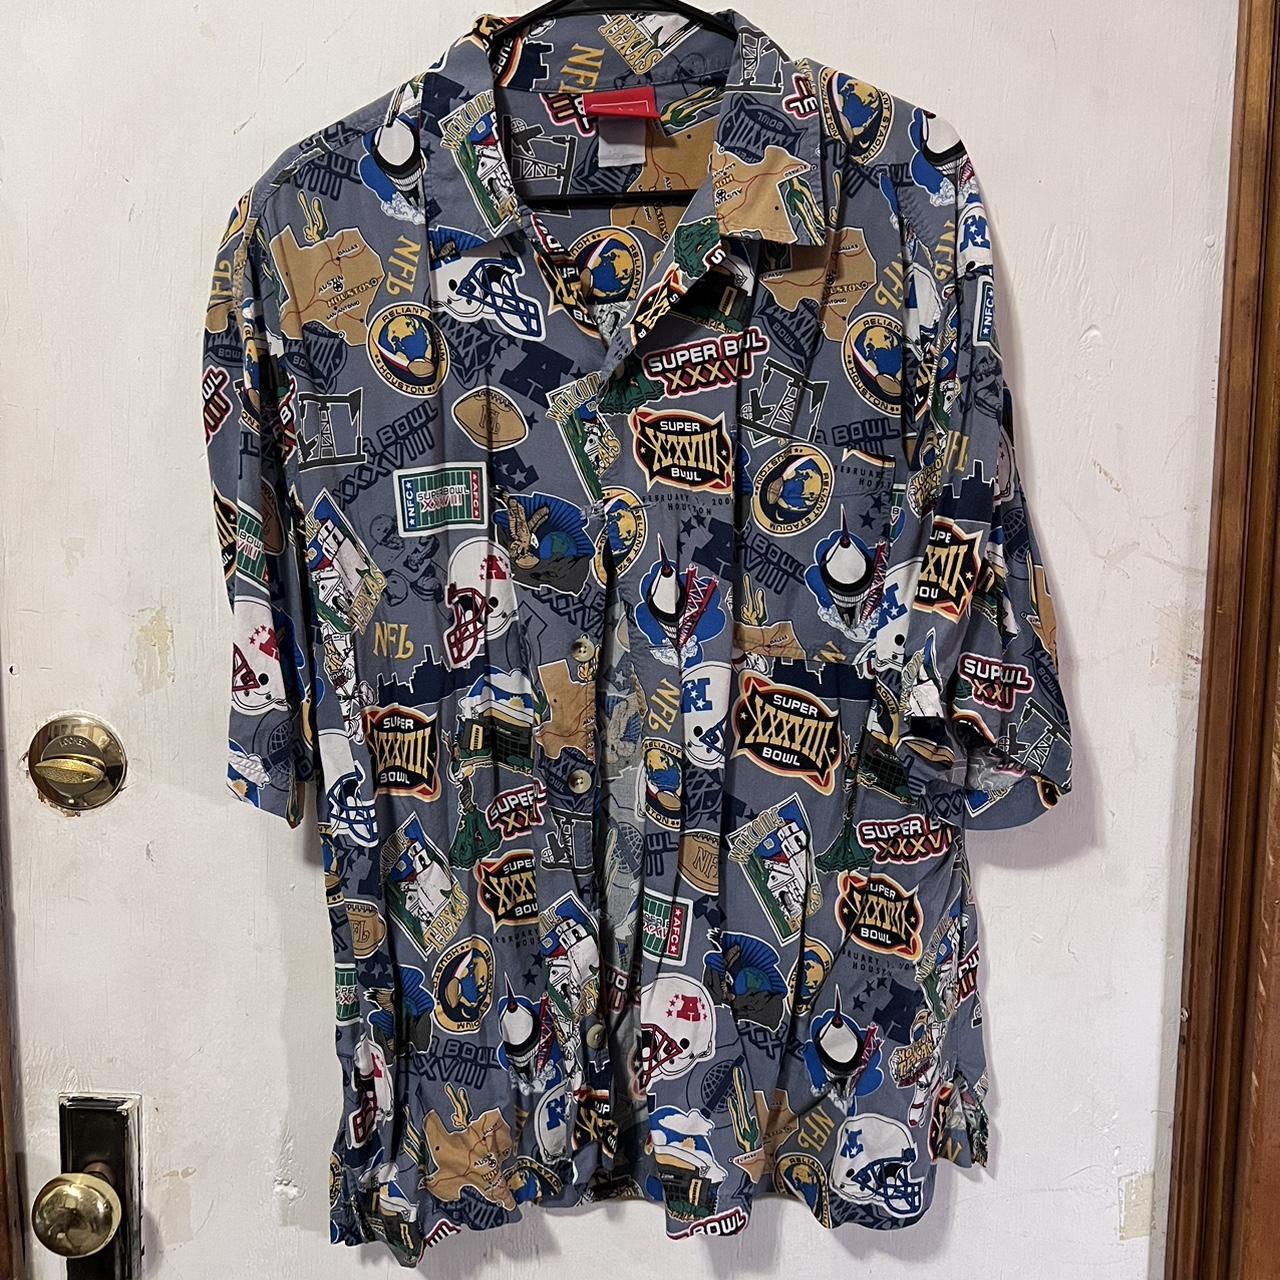 Vintage Super Bowl Button Up Shirt Size Large Has - Depop